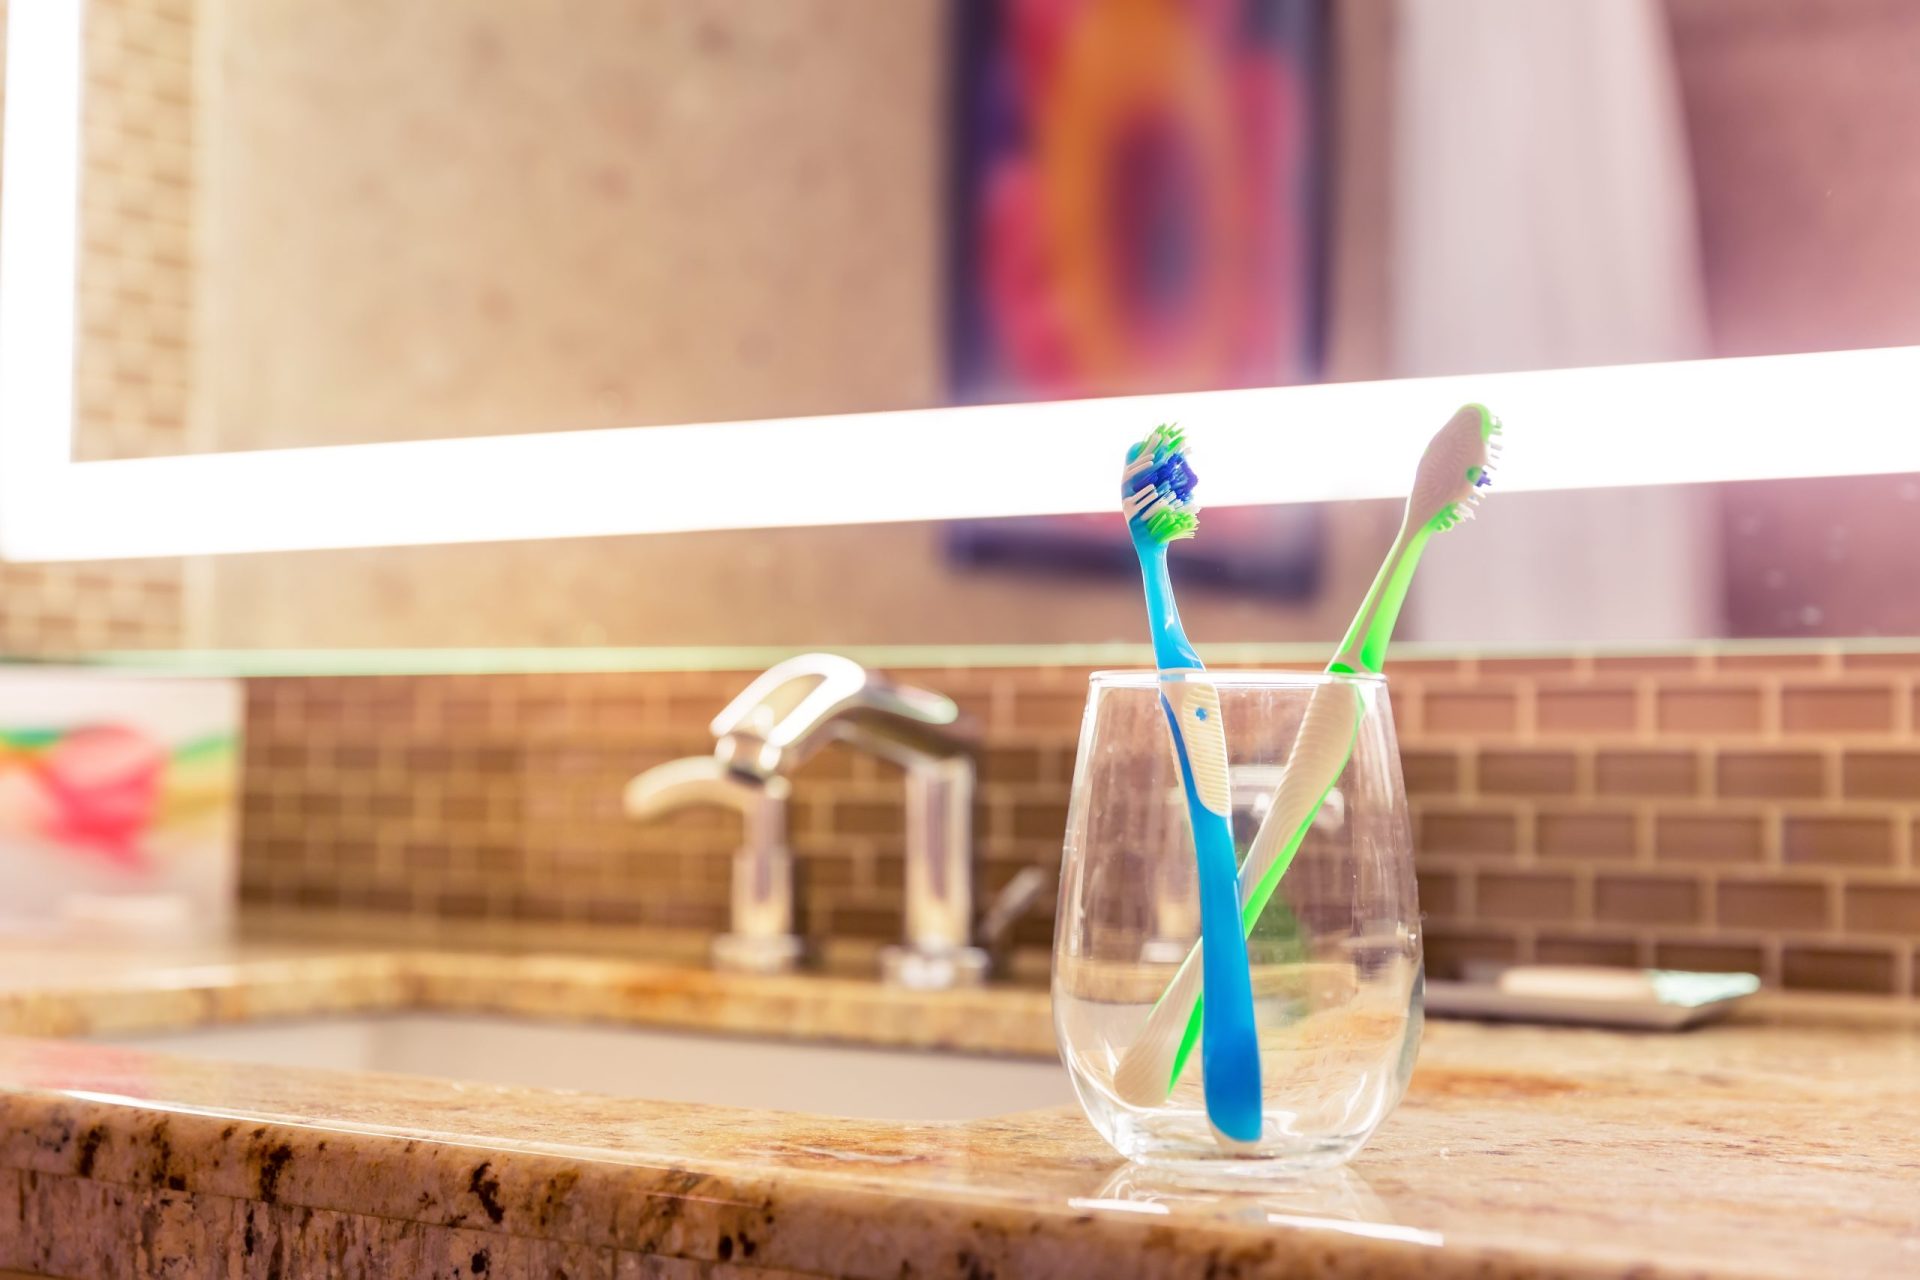 Costuma deixar a escova de dentes na casa de banho? Agora vai pensar duas vezes